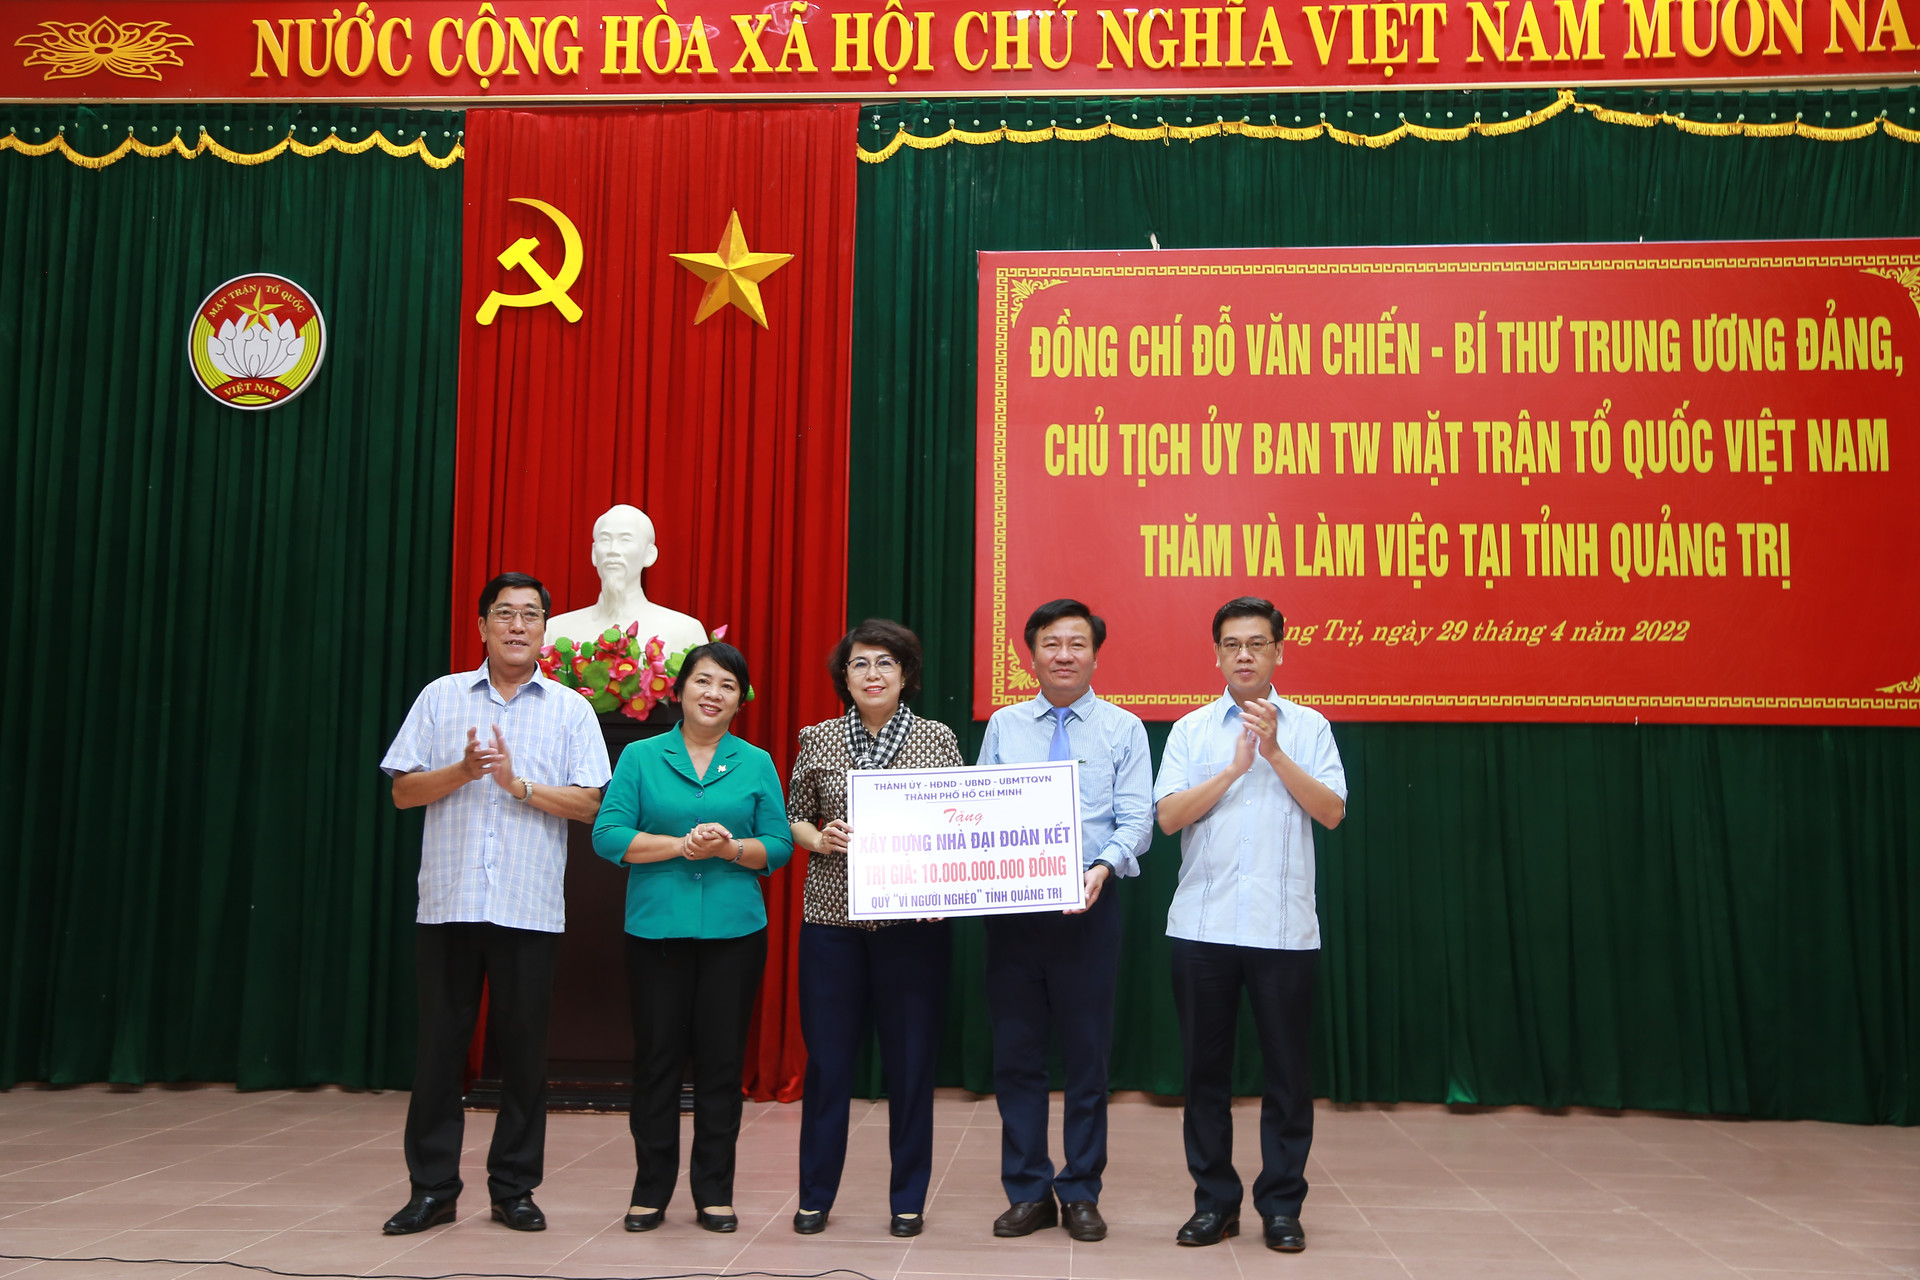 Thành ủy, HĐND, UBND, UBMTTQVN TP. Hồ Chí Minh đã trao tặng cho tỉnh Quảng Trị 10 tỷ đồng để xây dựng nhà Đại đoàn kết cho các hộ nghèo.